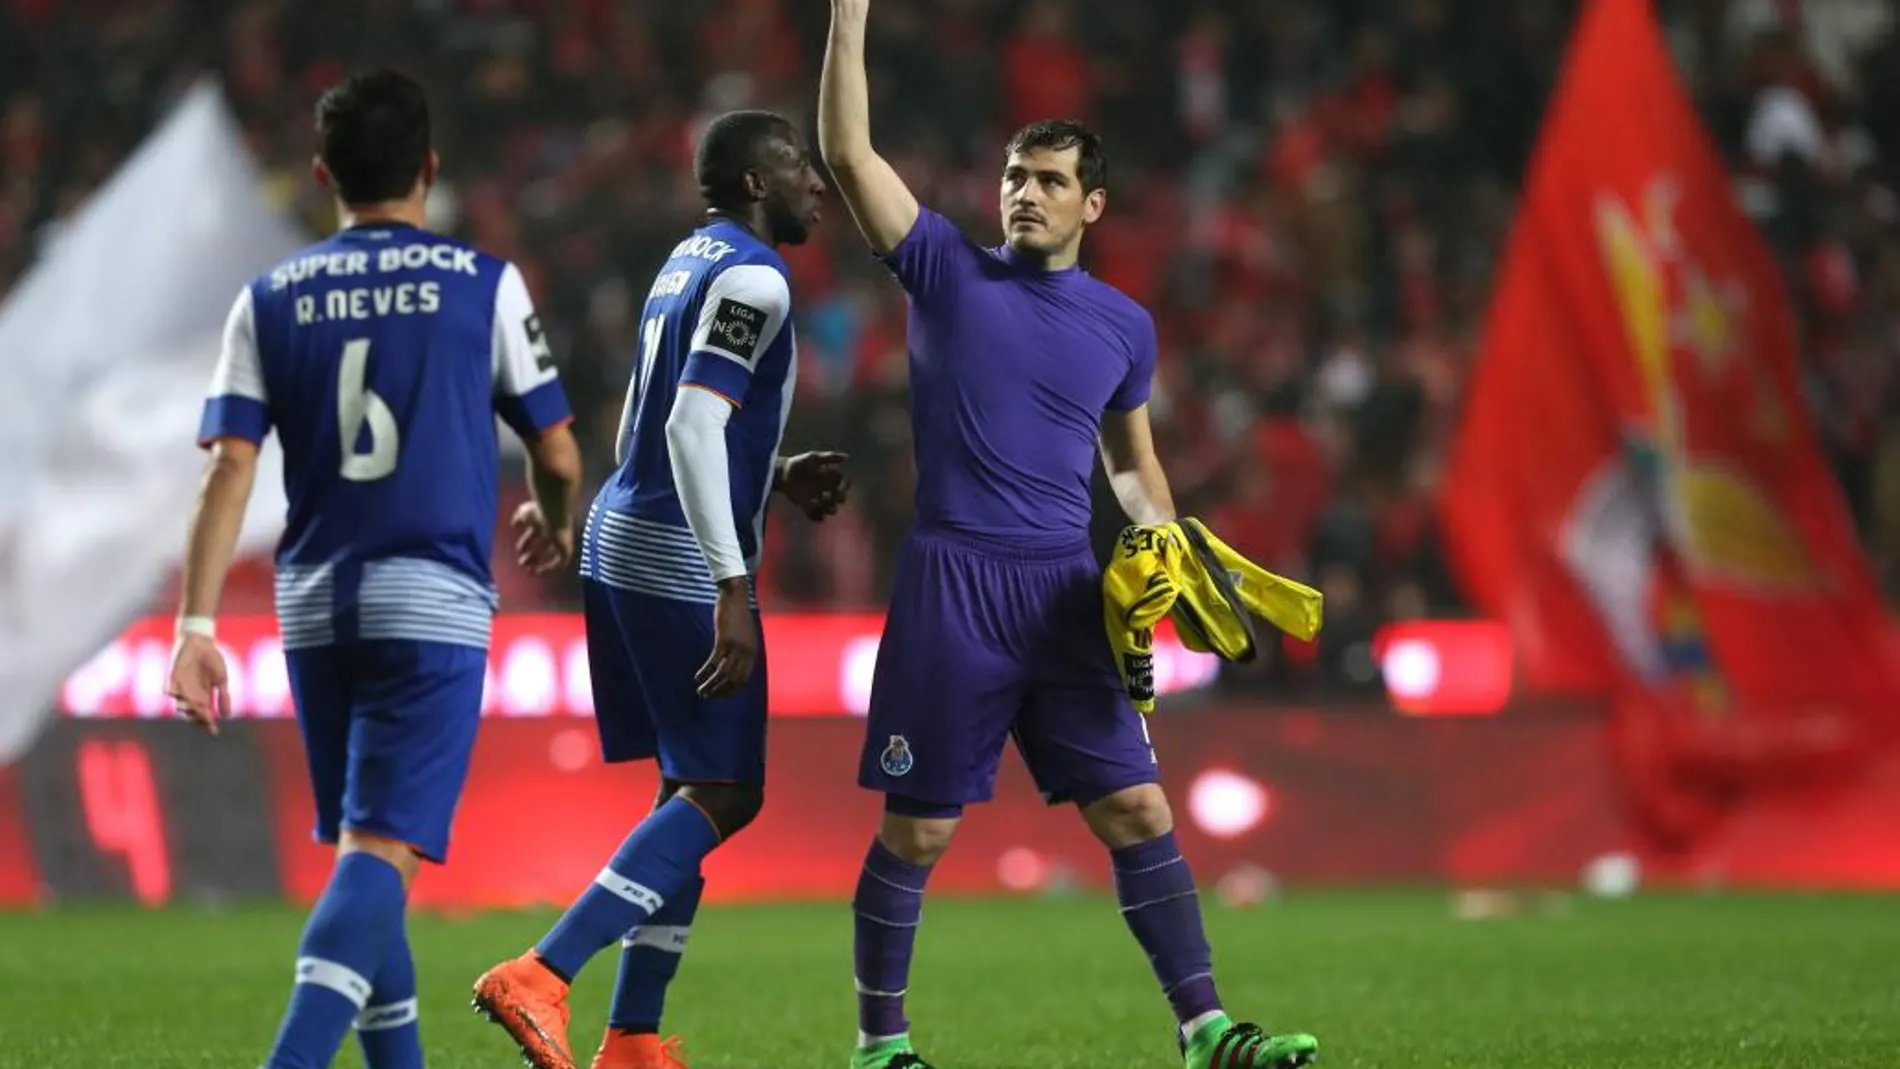 El portero del Oporto, Iker Casillas, saluda a los aficionados al término del partido